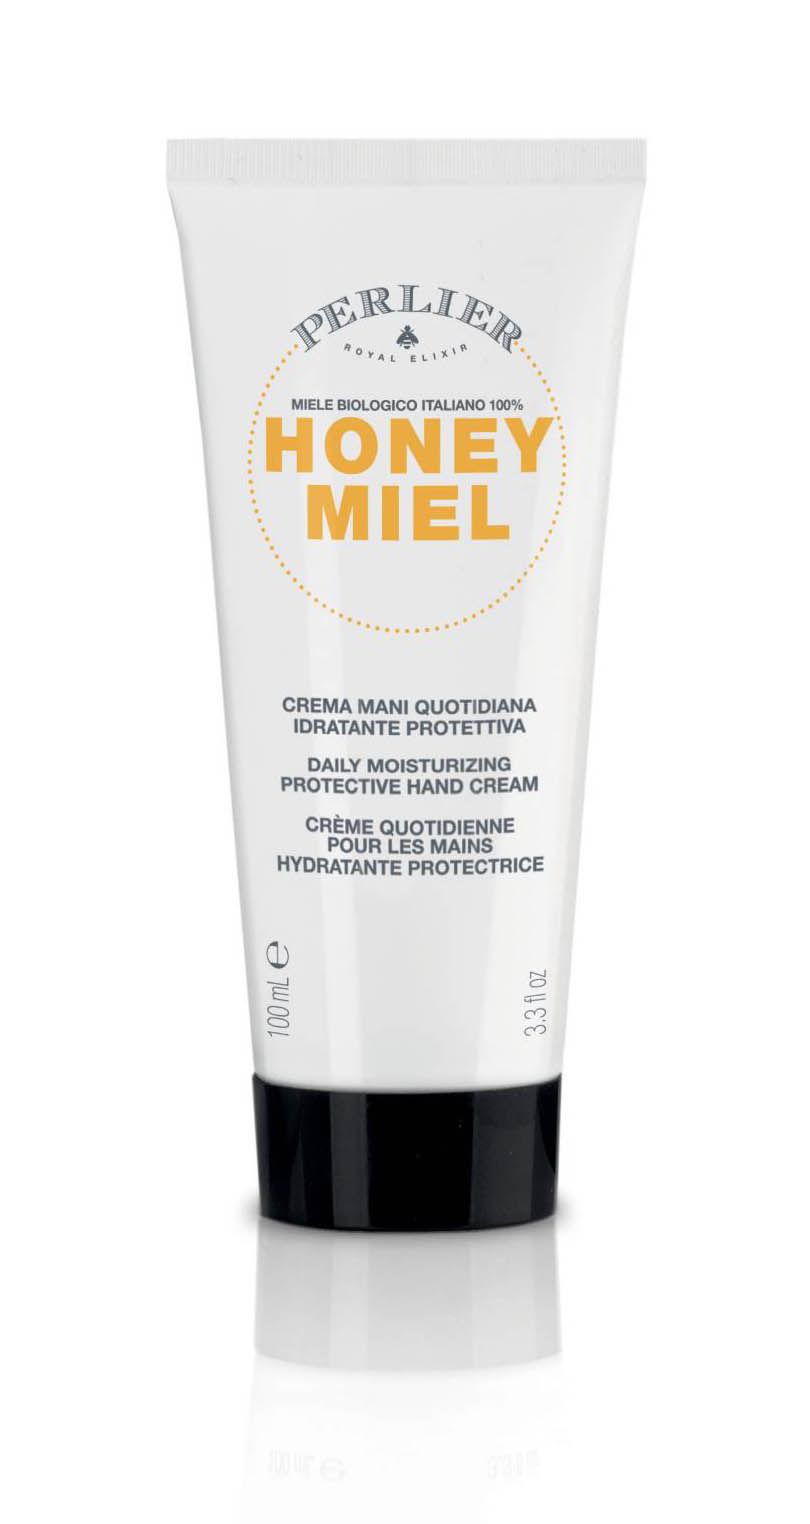 Perlier Honey Miel Crema Mani Quotidiana Miele Idratante Protettiva 100ml